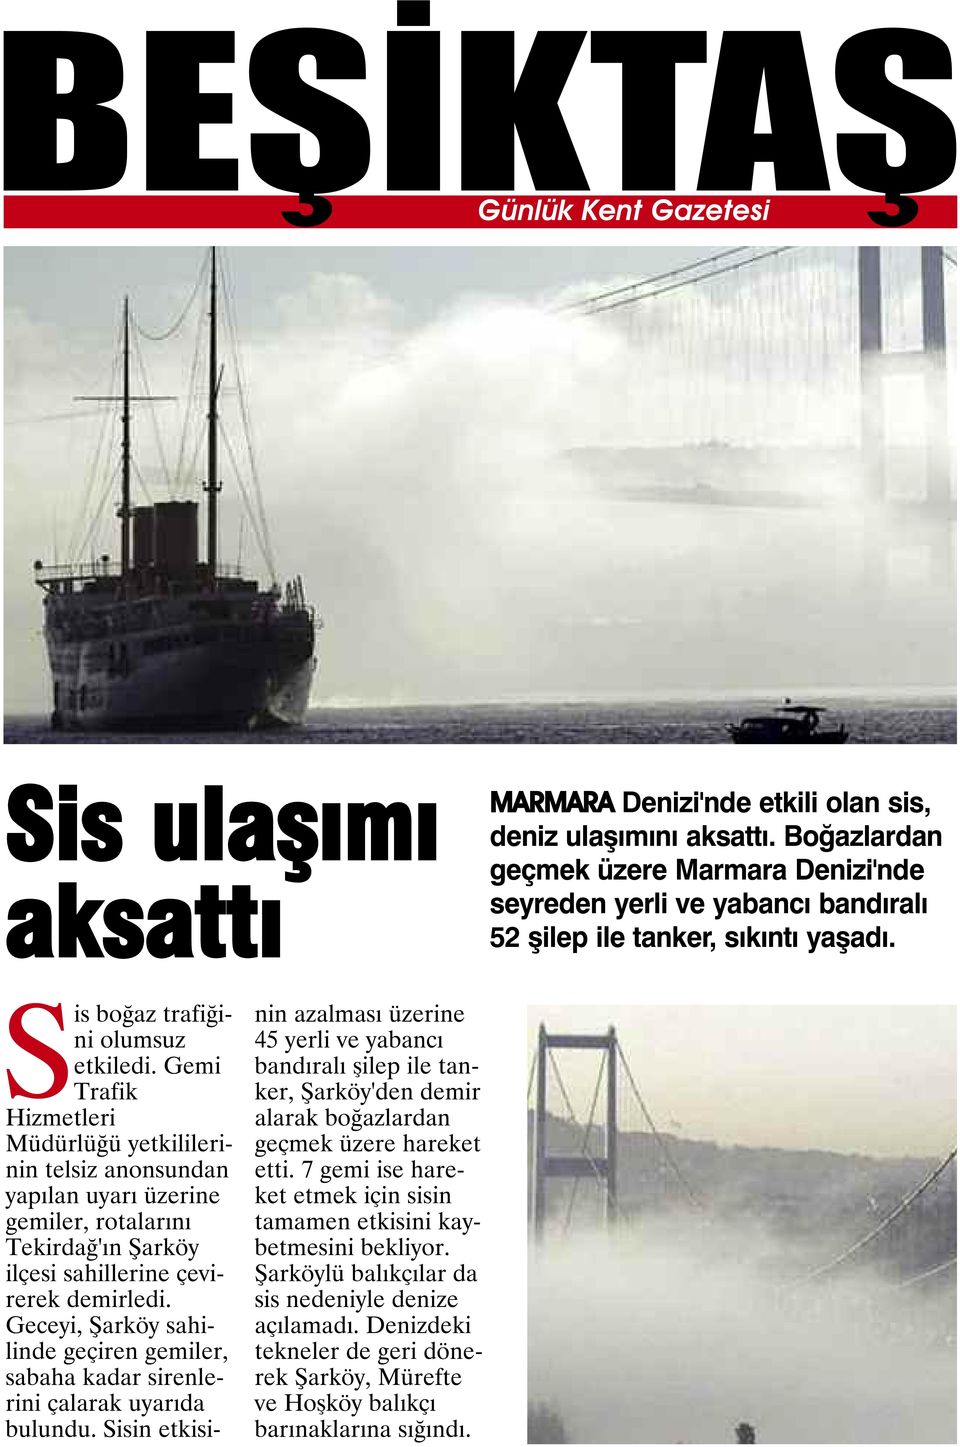 Gemi Trafik Hizmetleri Müdürlüğü yetkililerinin telsiz anonsundan yapılan uyarı üzerine gemiler, rotalarını Tekirdağ'ın Şarköy ilçesi sahillerine çevirerek demirledi.